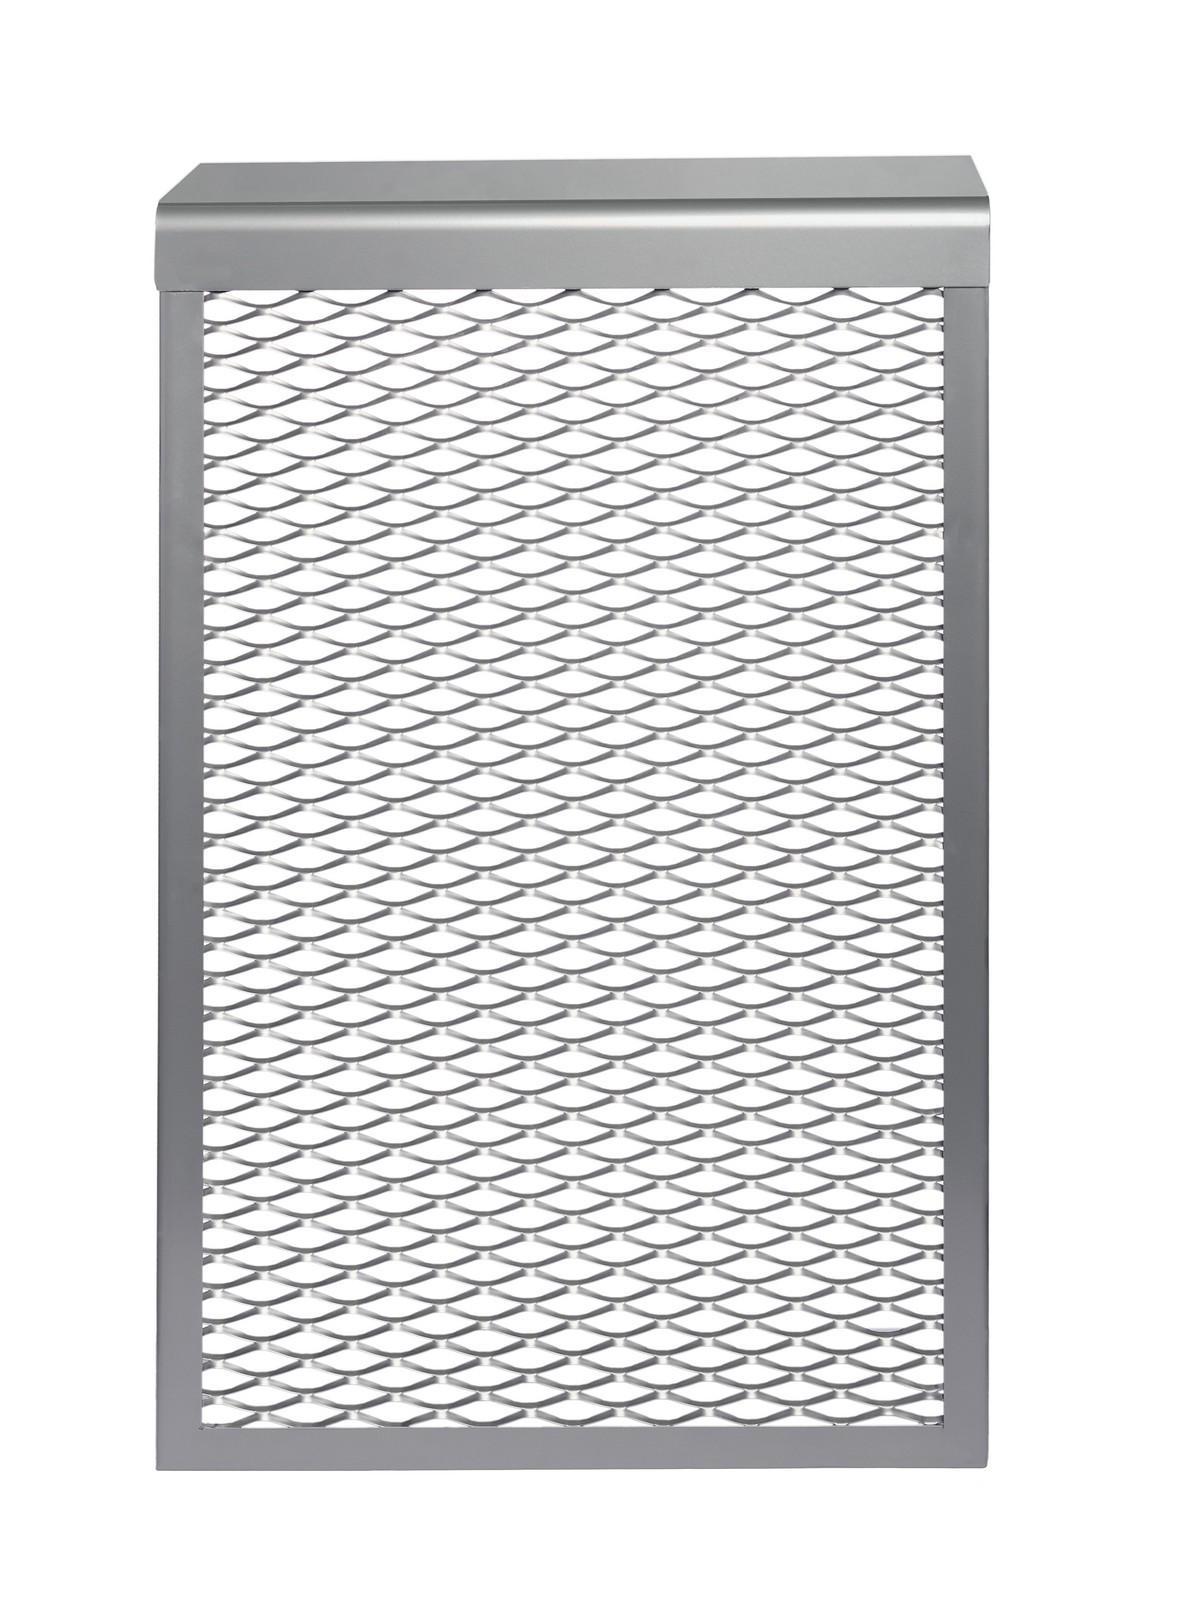 Экран для батареи Волро-трейд 6-и секционный серебристый по цене 840 .